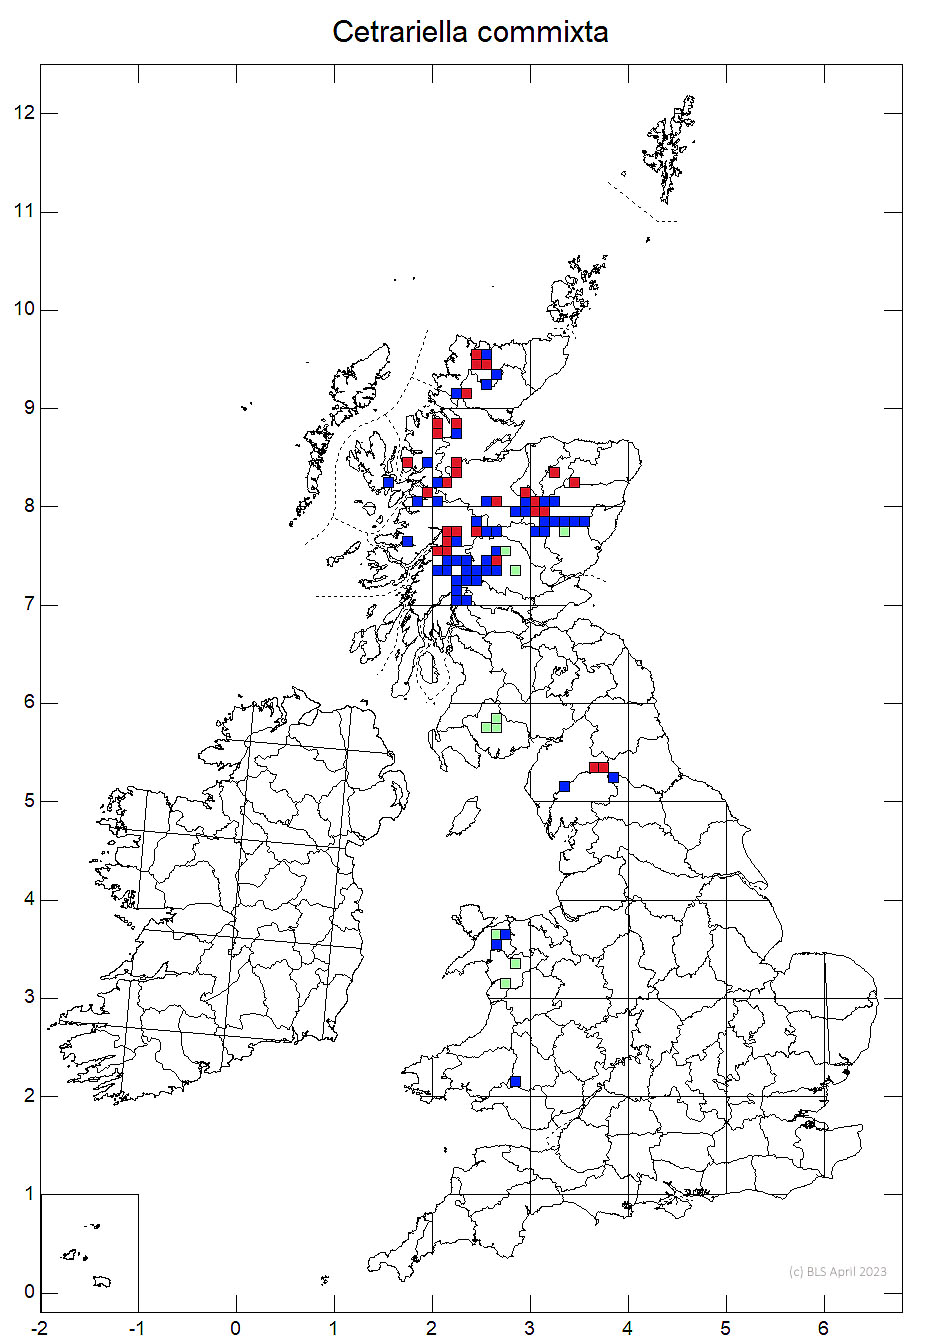 Cetrariella commixta 10km sq distribution map